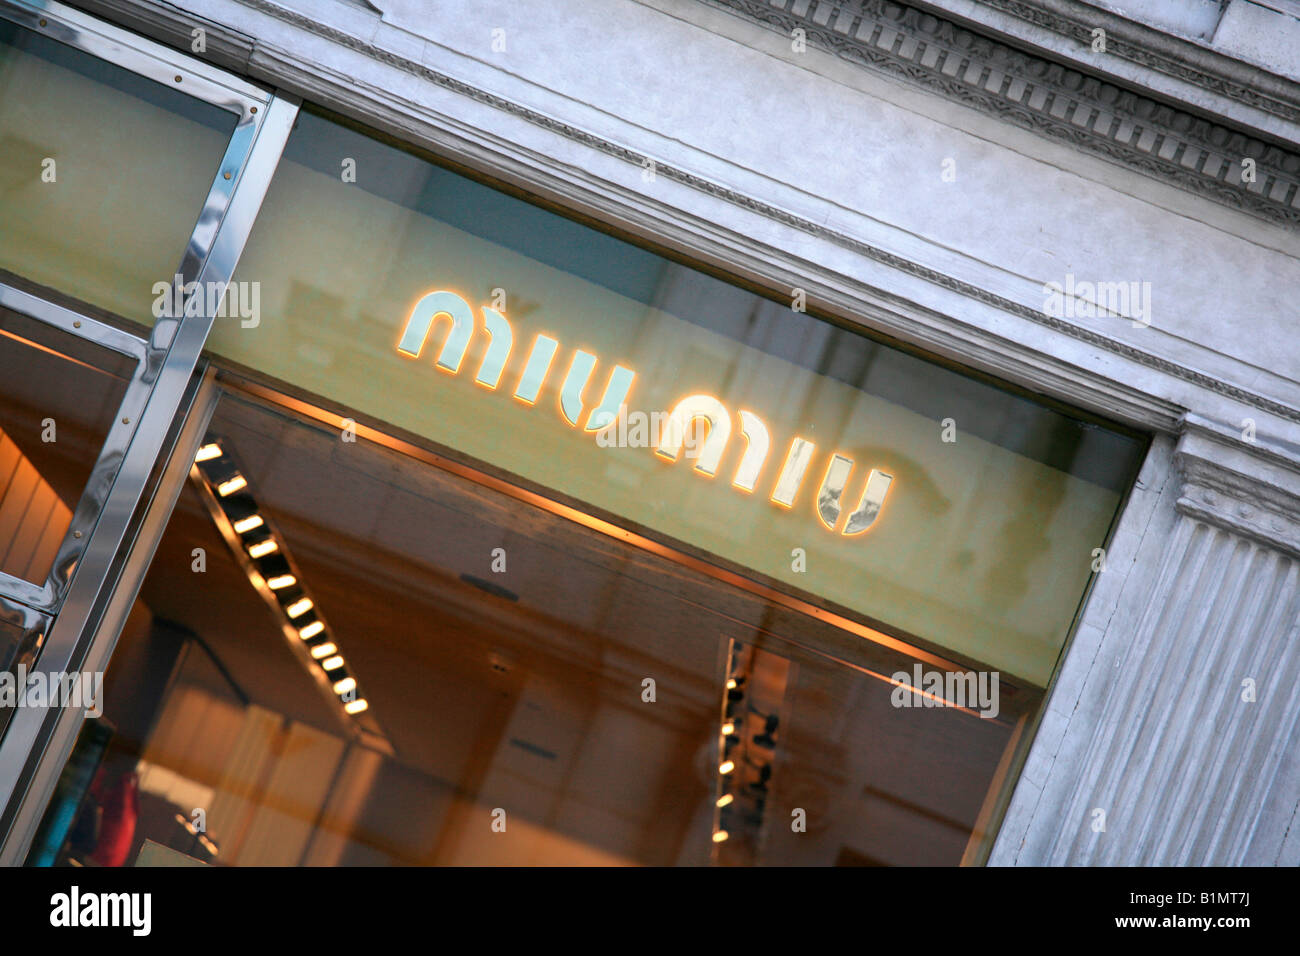 Miu Miu store, London Stock Photo